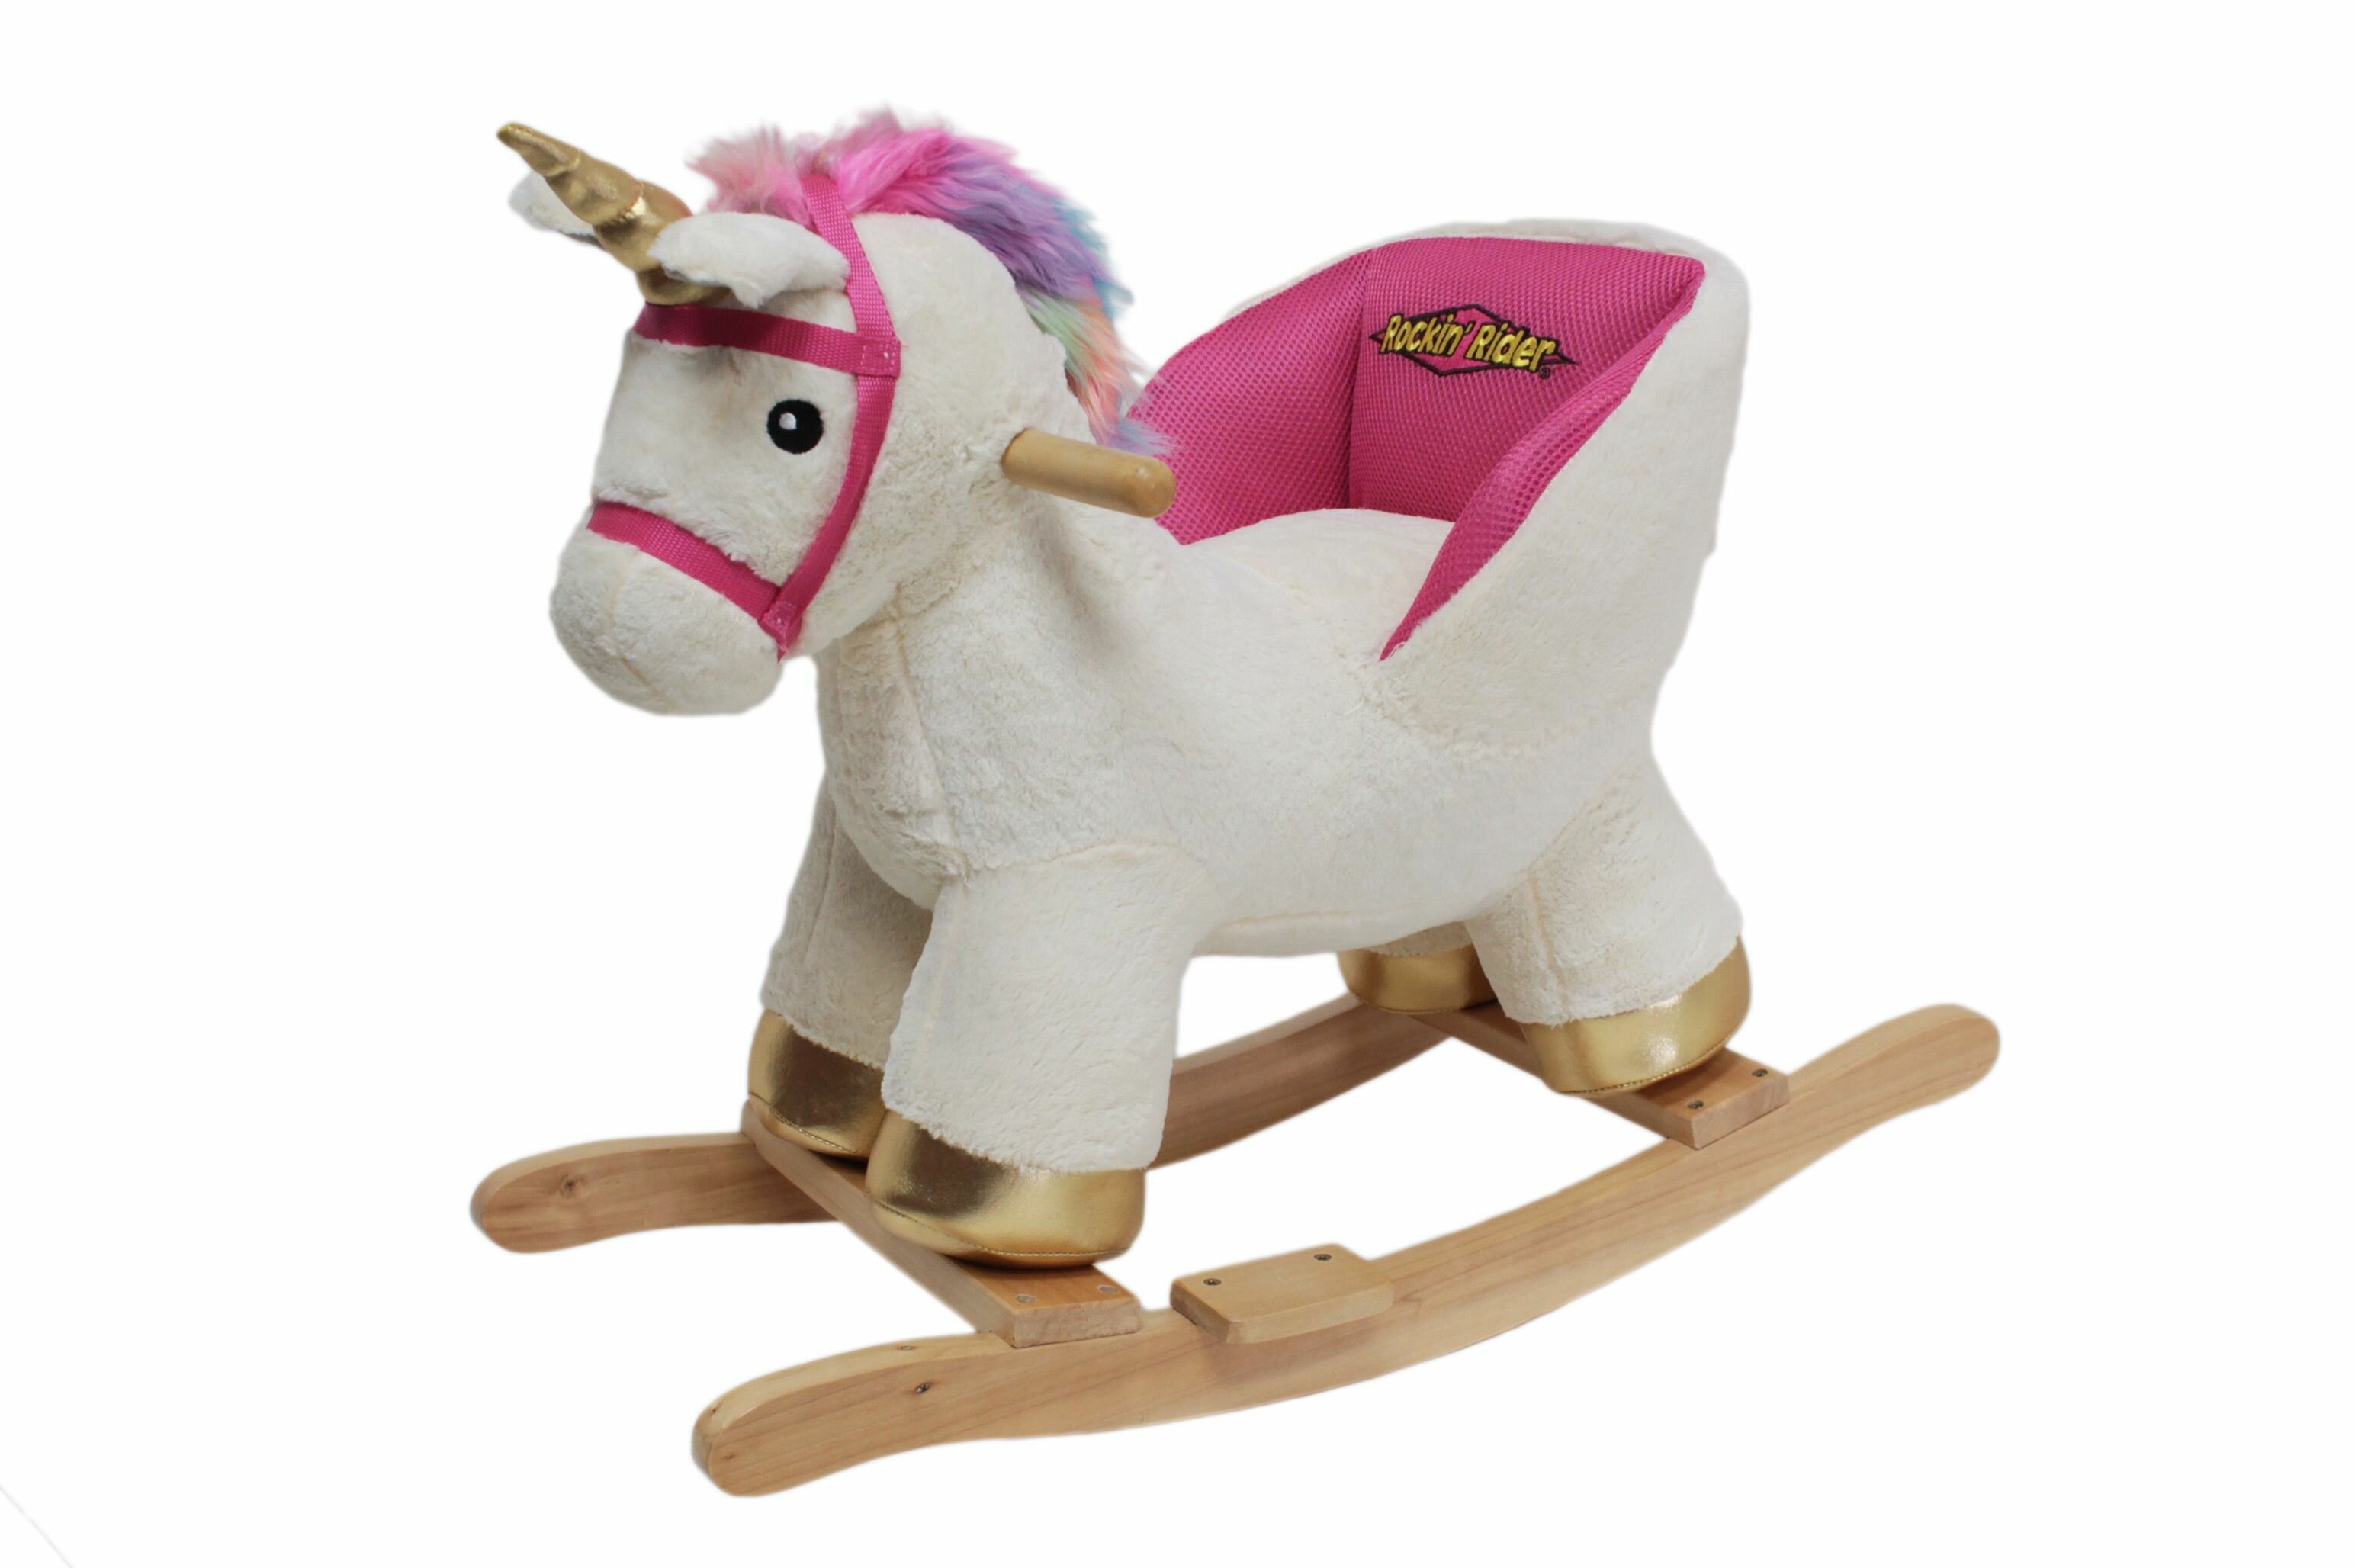 unicorn rocking horse for 1 year old